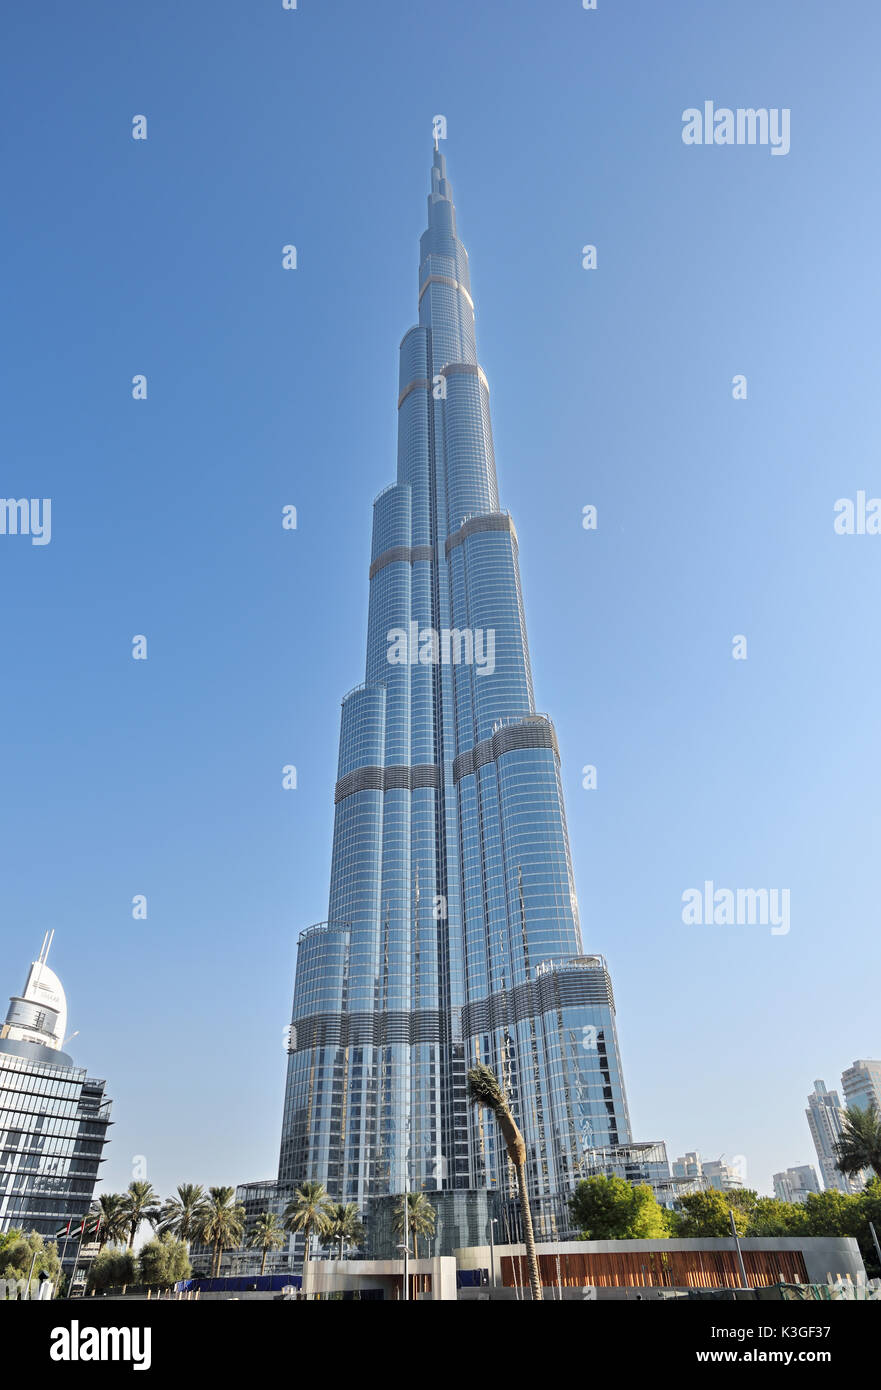 Dubai, Emiratos Árabes Unidos - Oct 7, 2016: el centro de Dubai con el Burj Khalifa torre. Este es el rascacielos más alto de la estructura hecha por el hombre en el mundo, Foto de stock